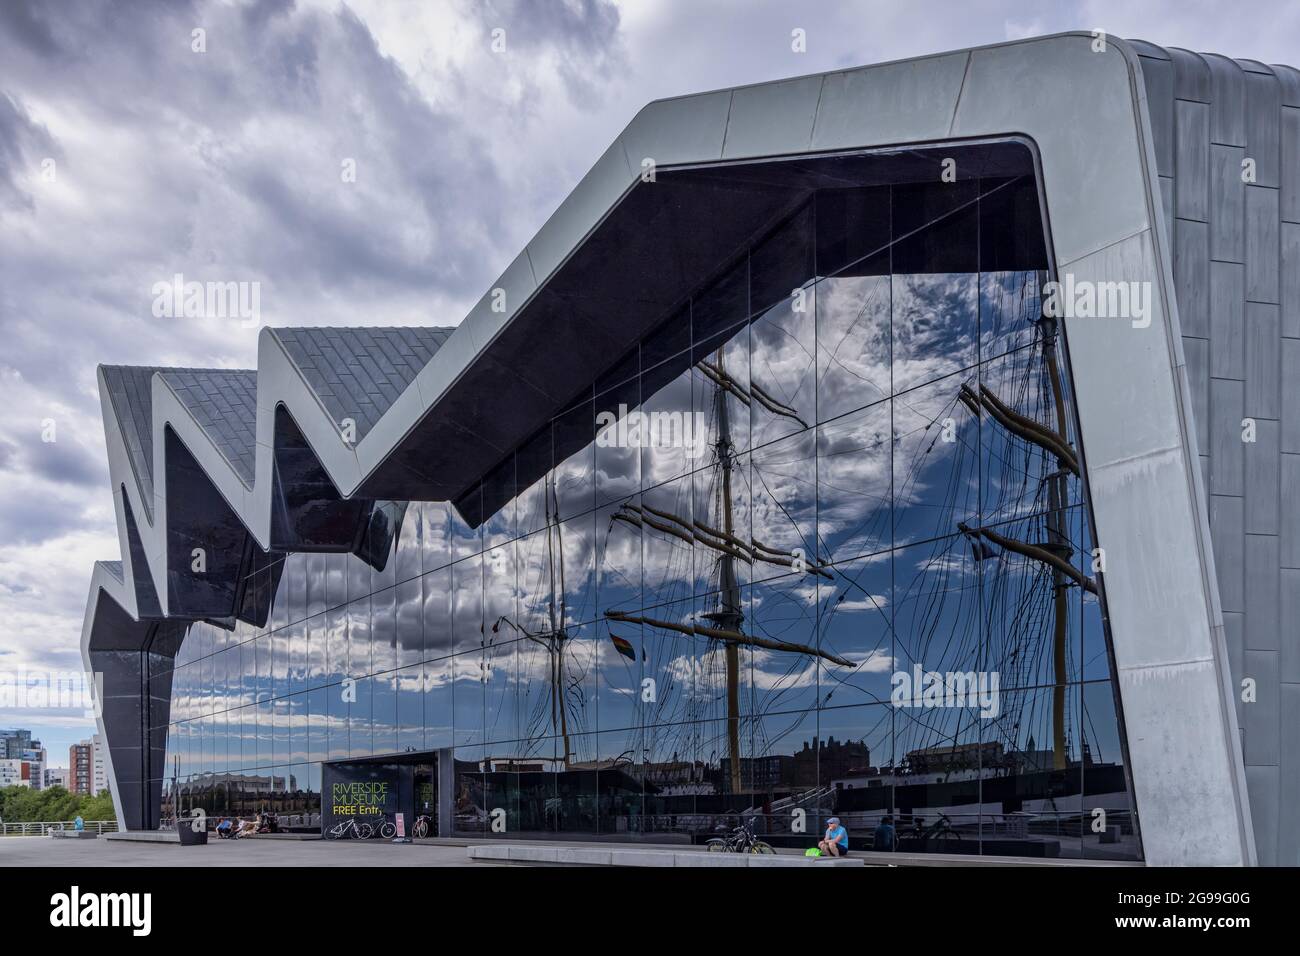 Le musée de Glasgow Riverside, musée des transports, avec le grand navire Glenlee réfléchi dans le mur de verre. Banque D'Images